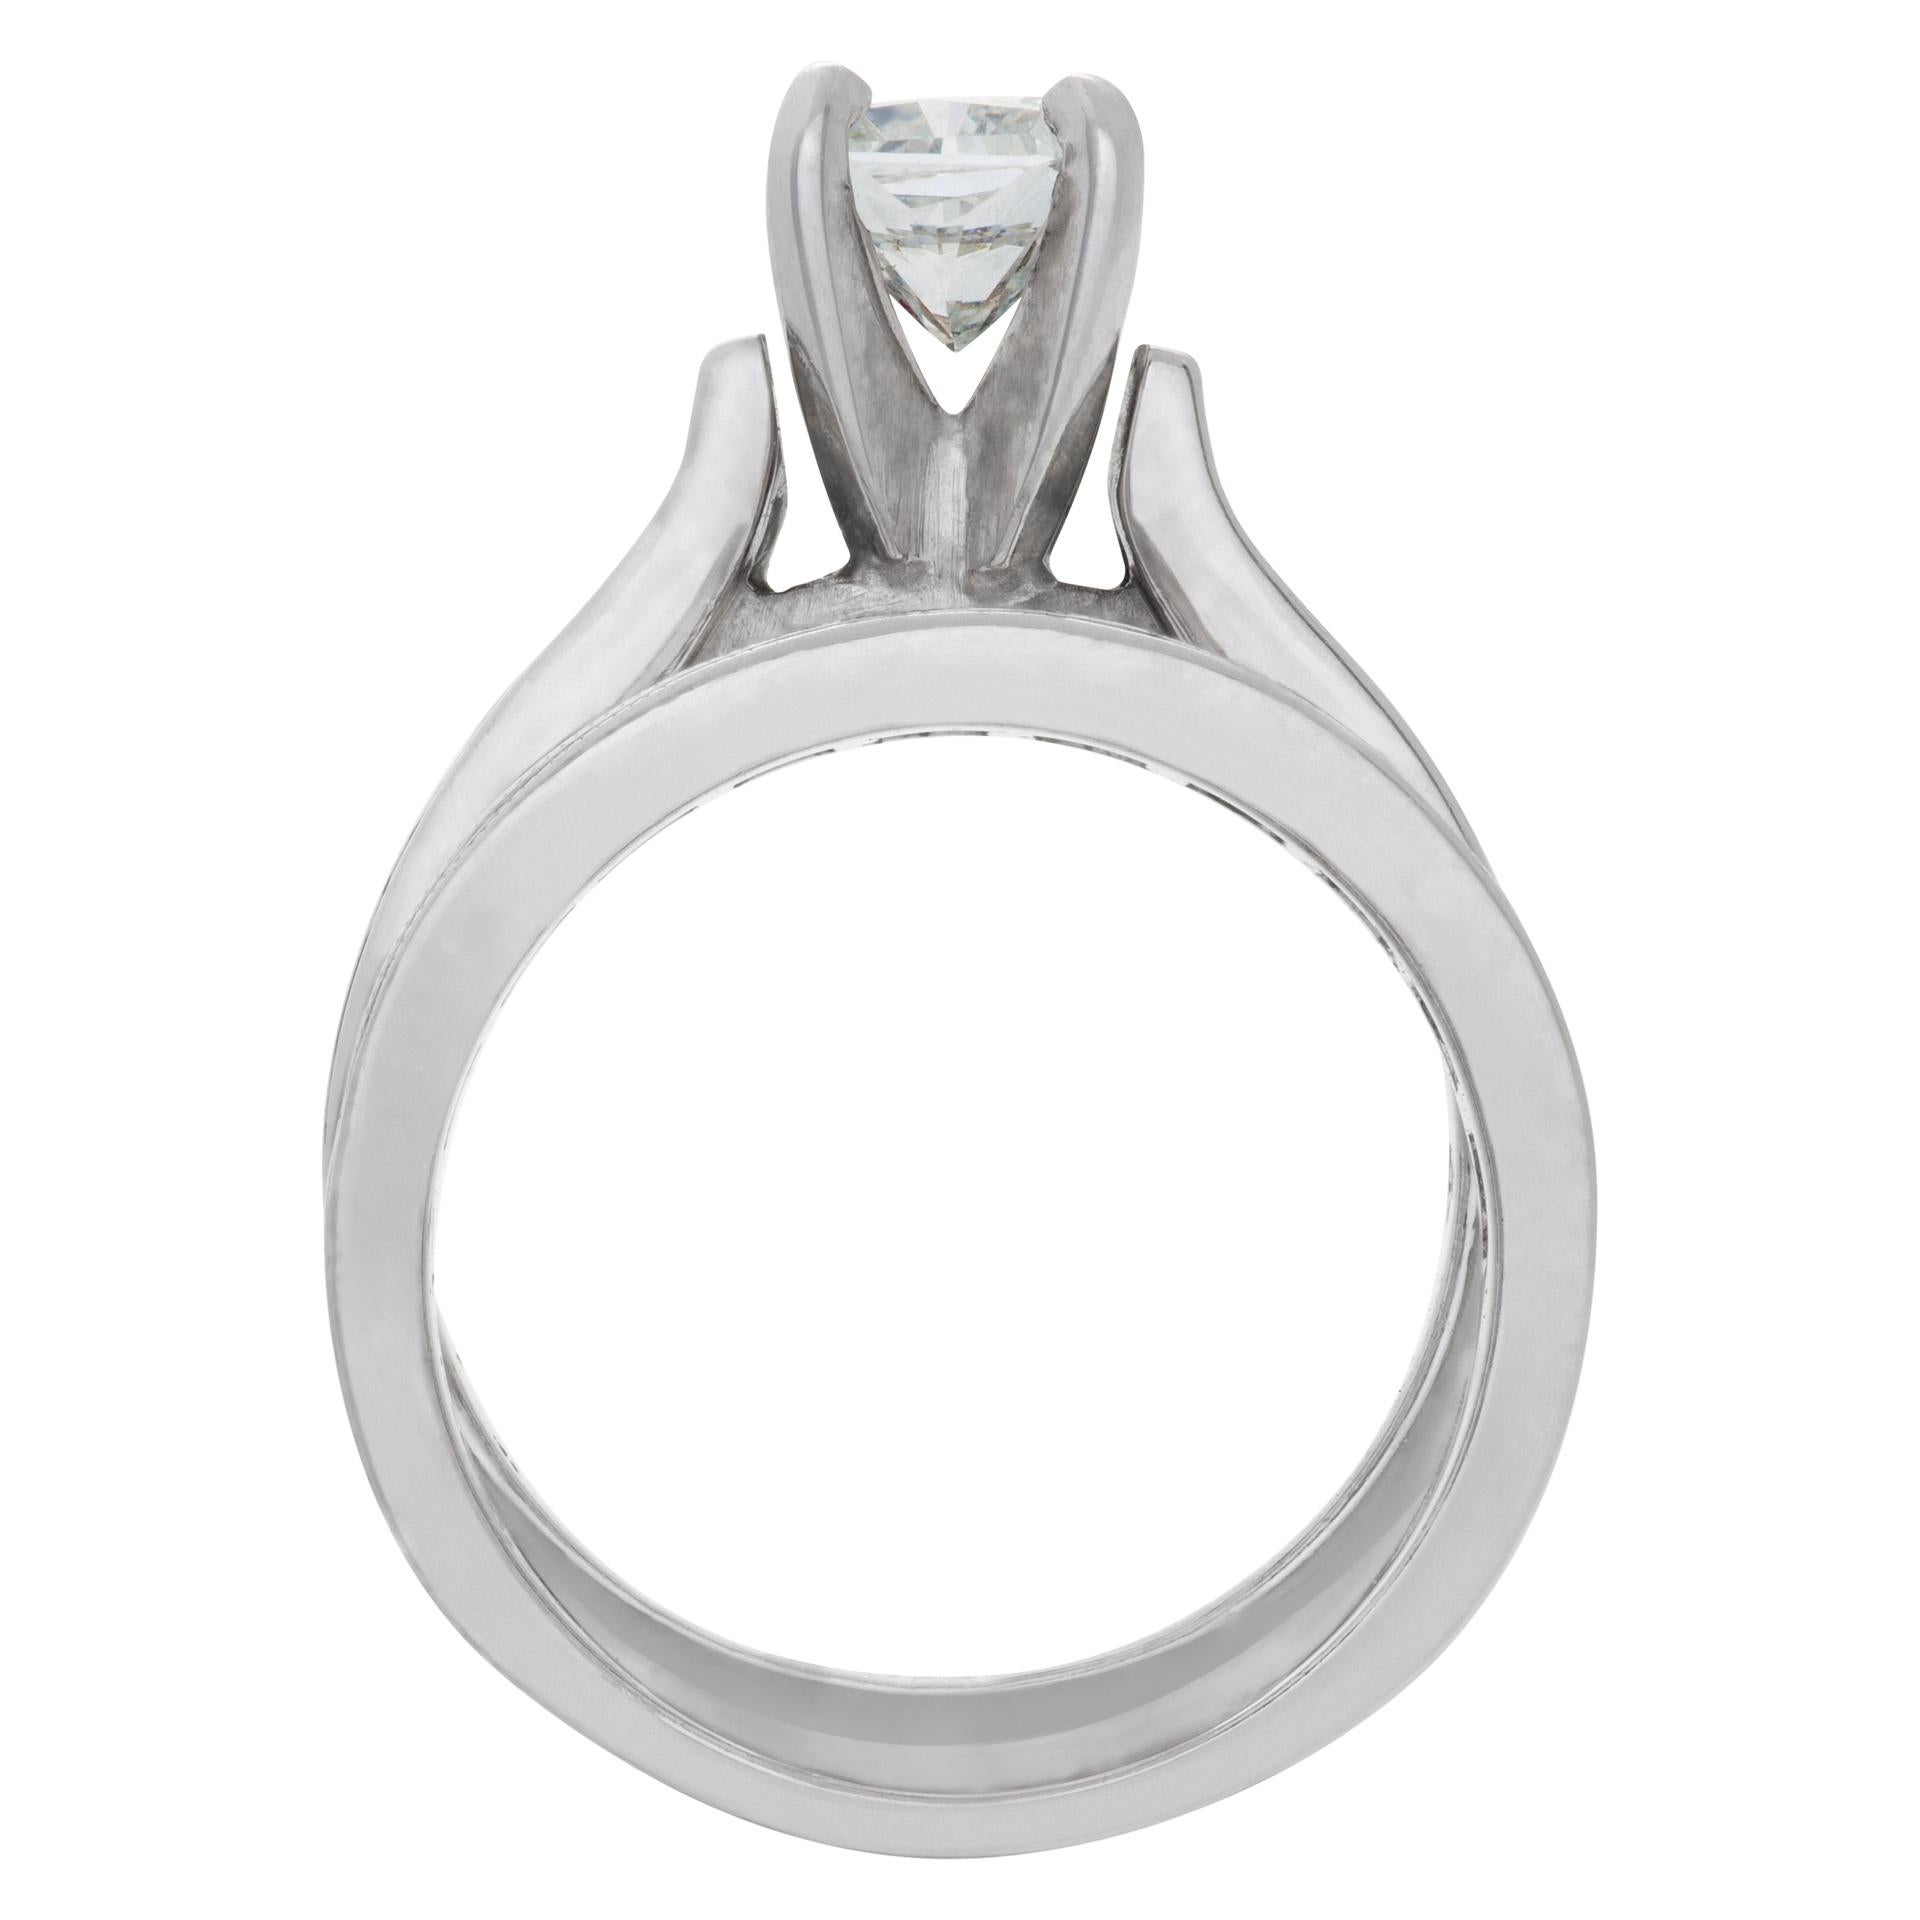 Women's Diamond Engagement Ring Set in 14k White Gold, 0.75 Ct Center Diamond For Sale